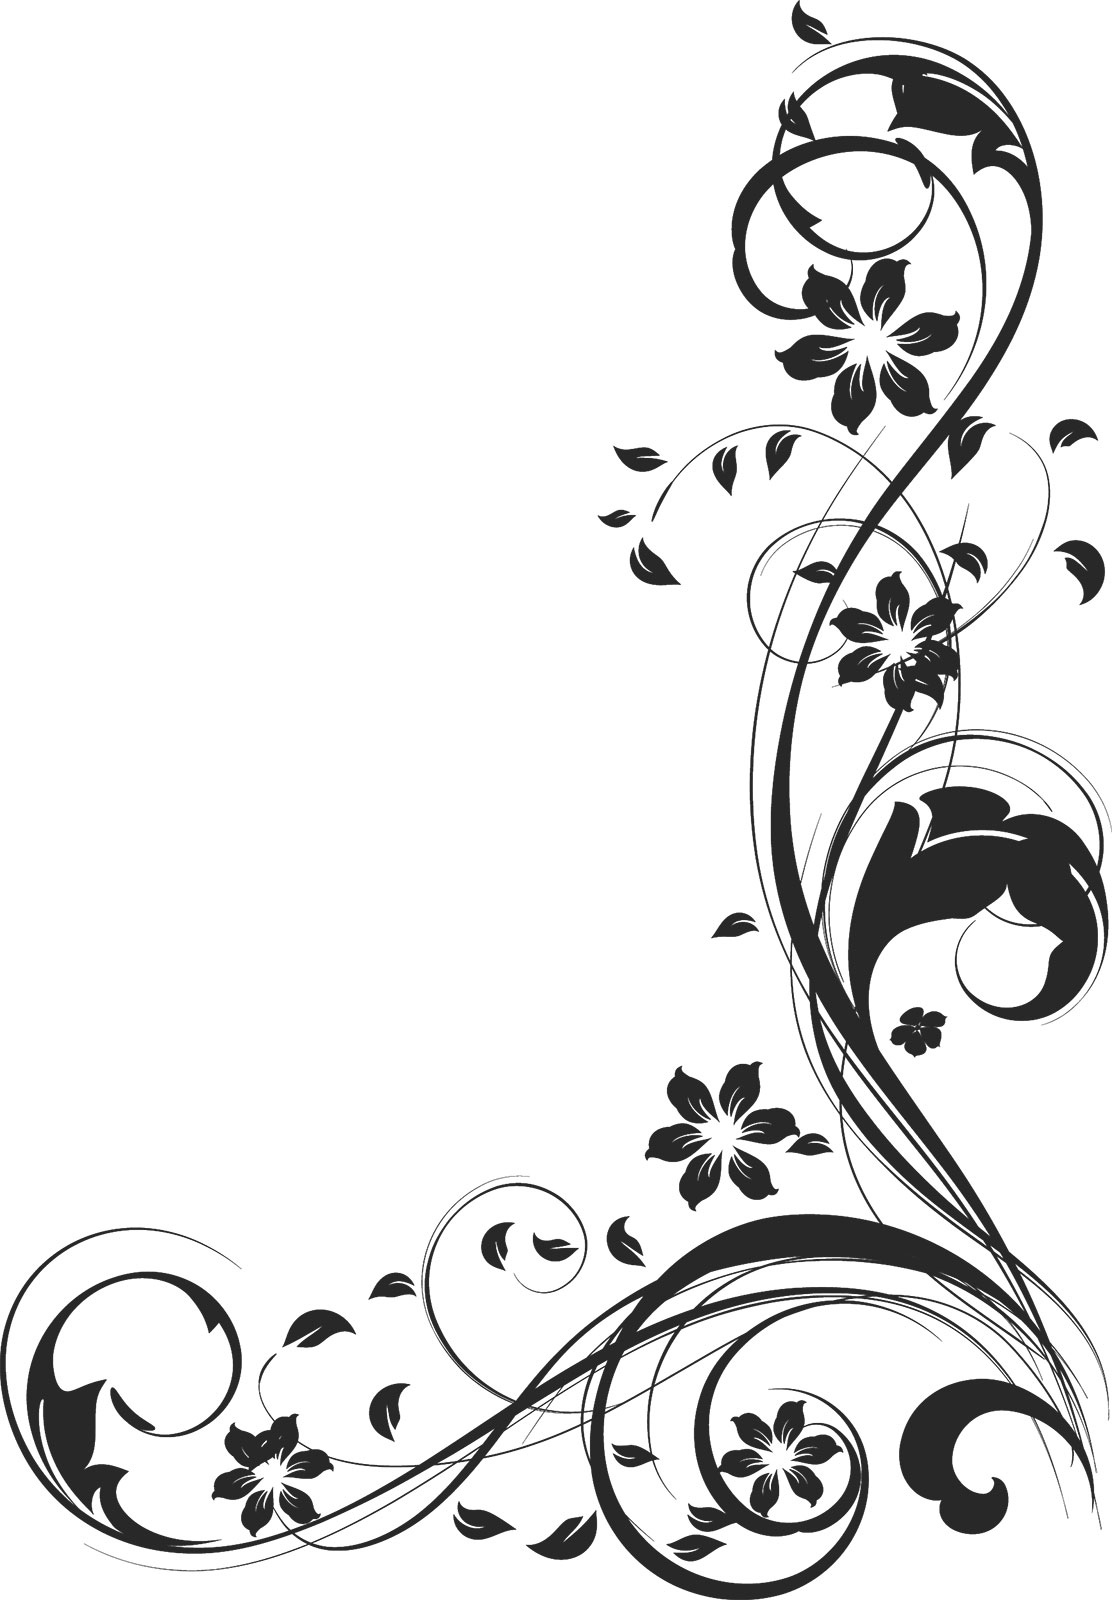 ポップでかわいい花のイラスト フリー素材 No 1193 白黒 茎葉 曲線